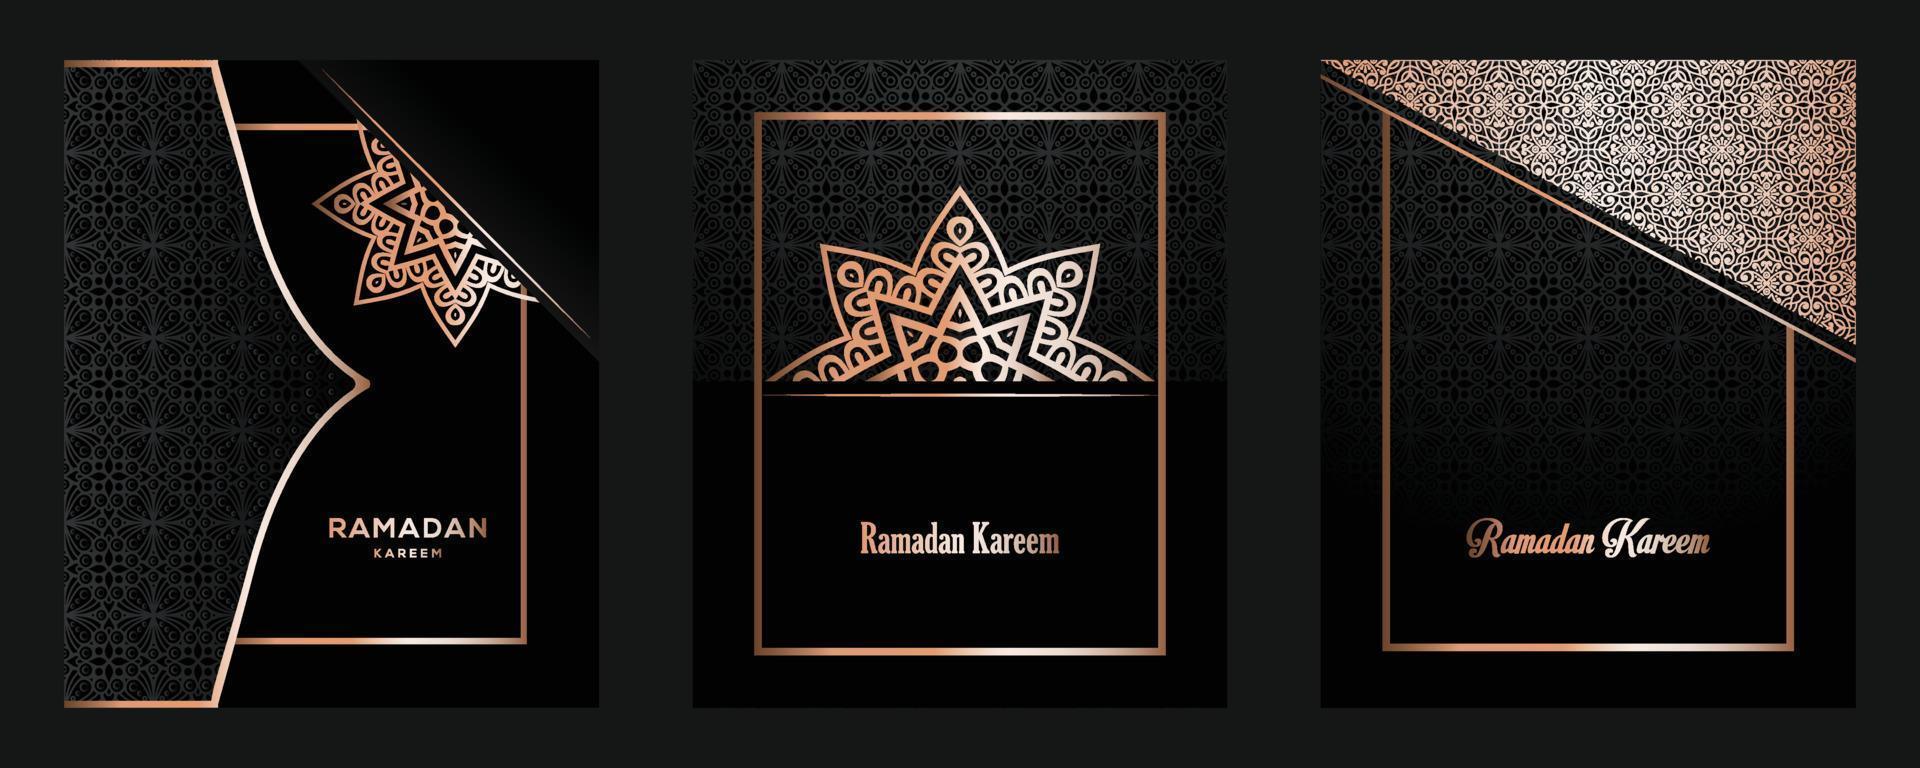 ramadan kareem diseño de fondo lujoso dorado islámico. pancarta, invitación, afiche, tarjeta para la celebración del festival de la comunidad musulmana. vector